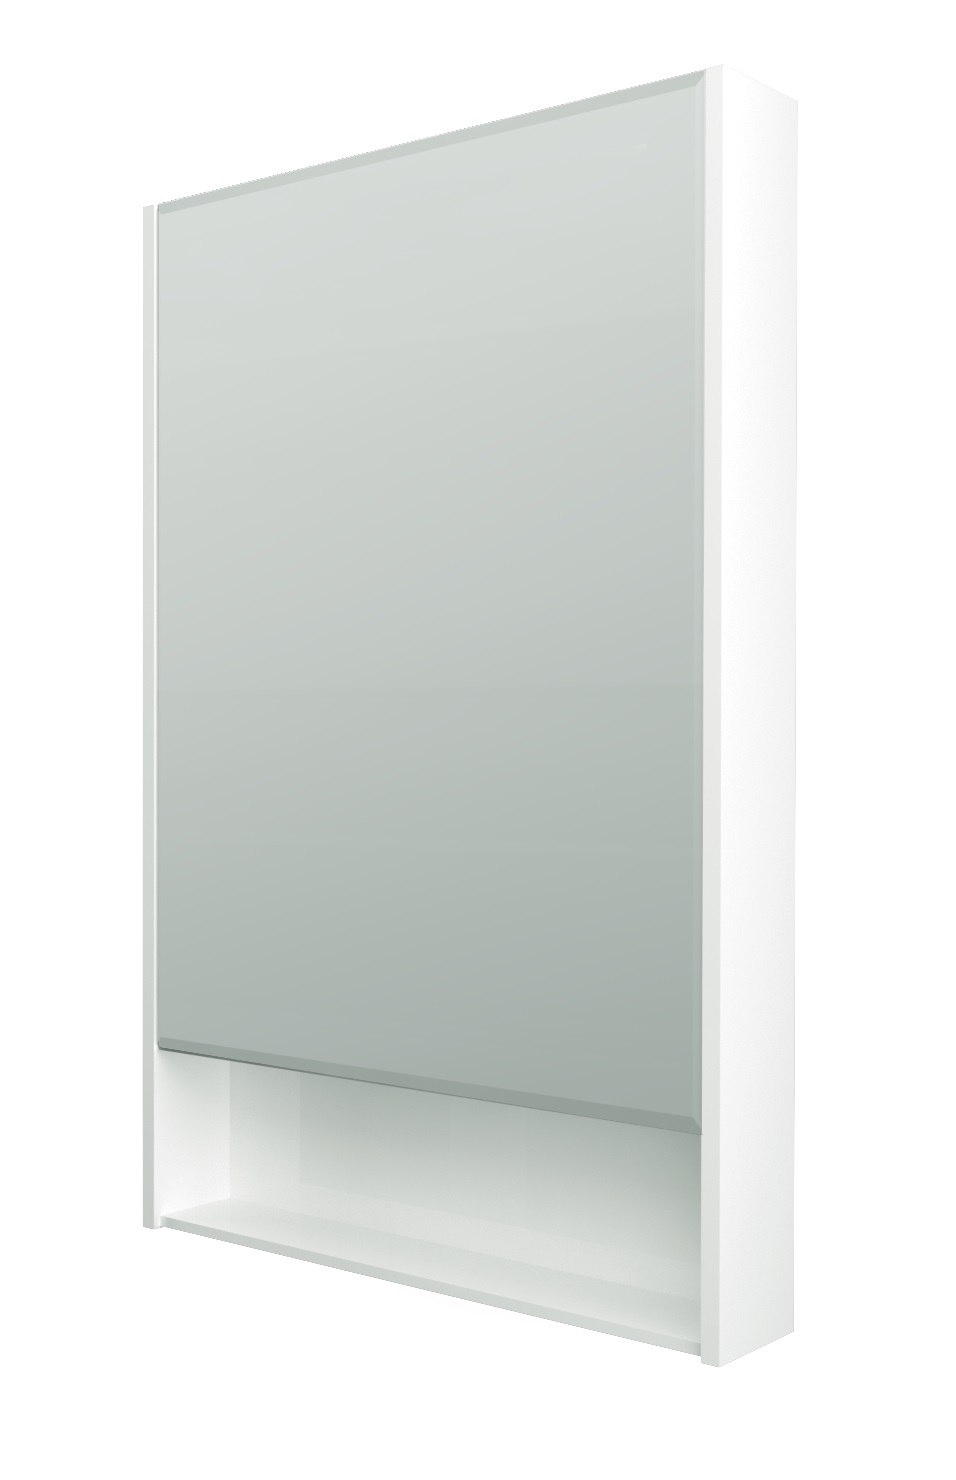 Зеркальный шкаф 1MarKa Mira 60 см белый